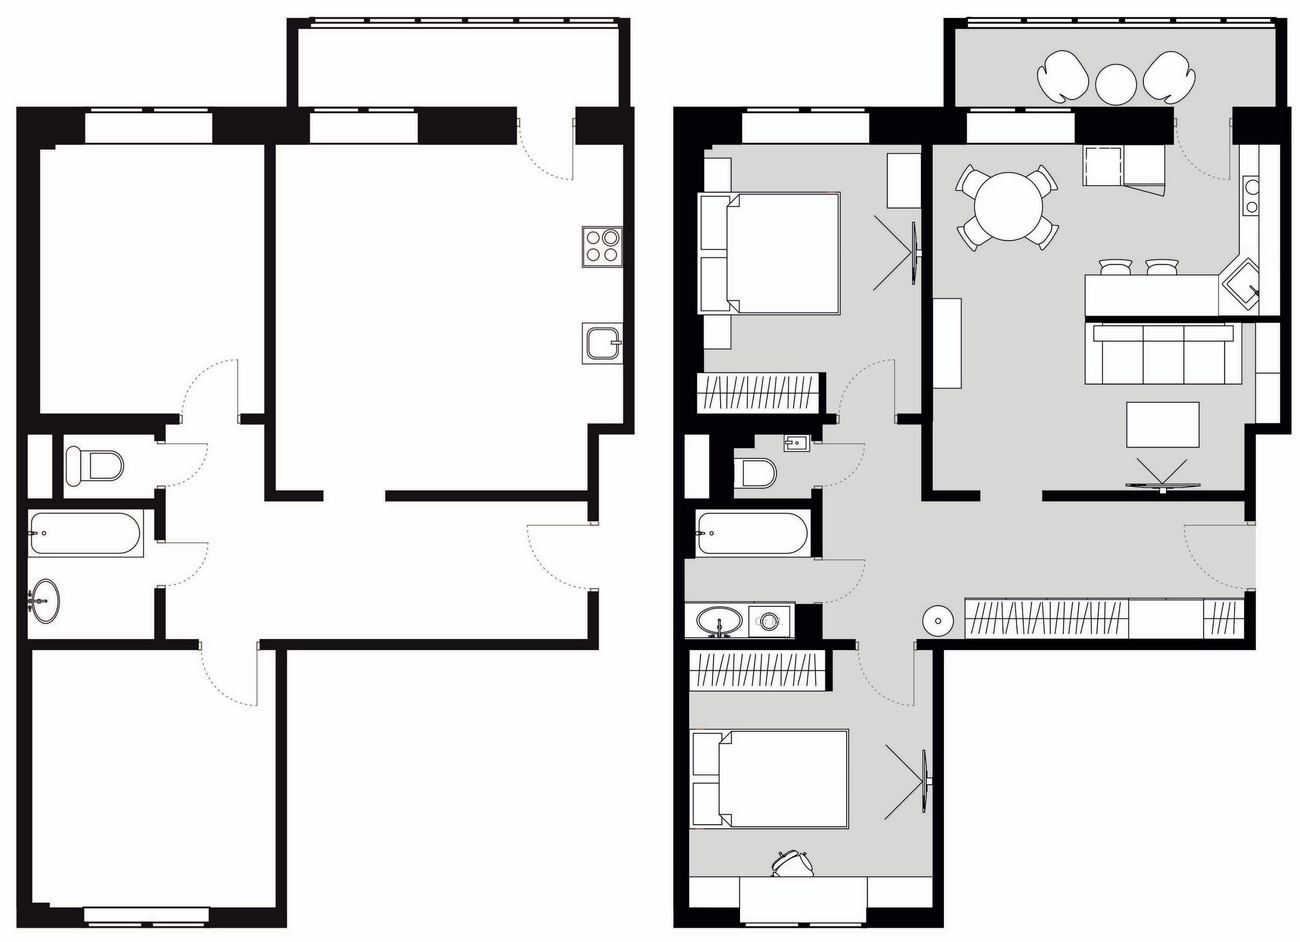 Alaprajz - Kutya, cica és egy háromfős család 80m2-en - háromszobás lakás berendezése kombinált konyha-nappalival, két hálószobával